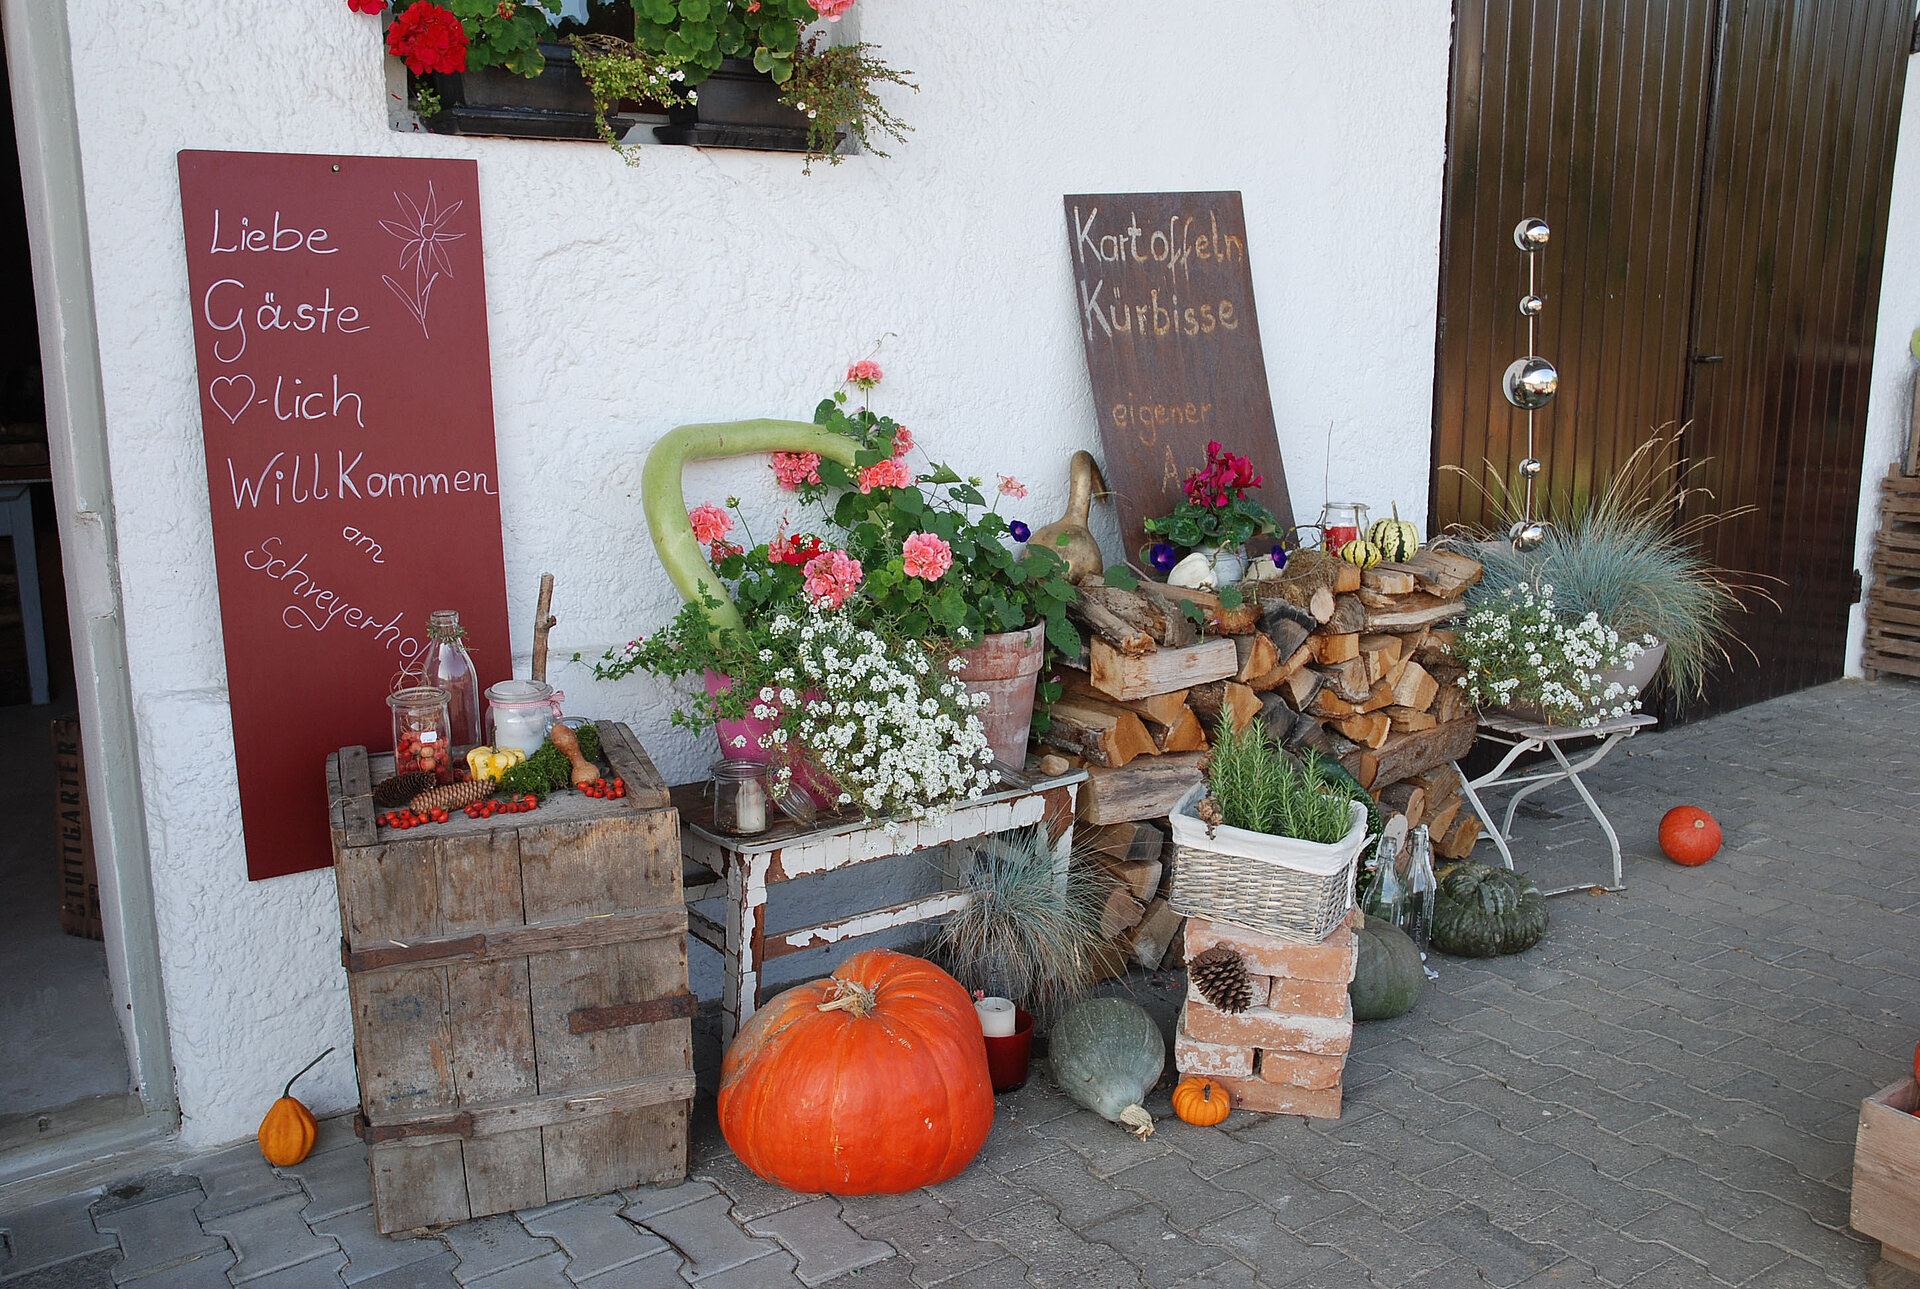 An der Hofmauer liegt ordentlich aufgeschichtetes Holz.  Kürbisse, Kräuter, Blumen und vieles mehr zieren den Eingang zum Hofladen der Familie Schreyer in Atting.